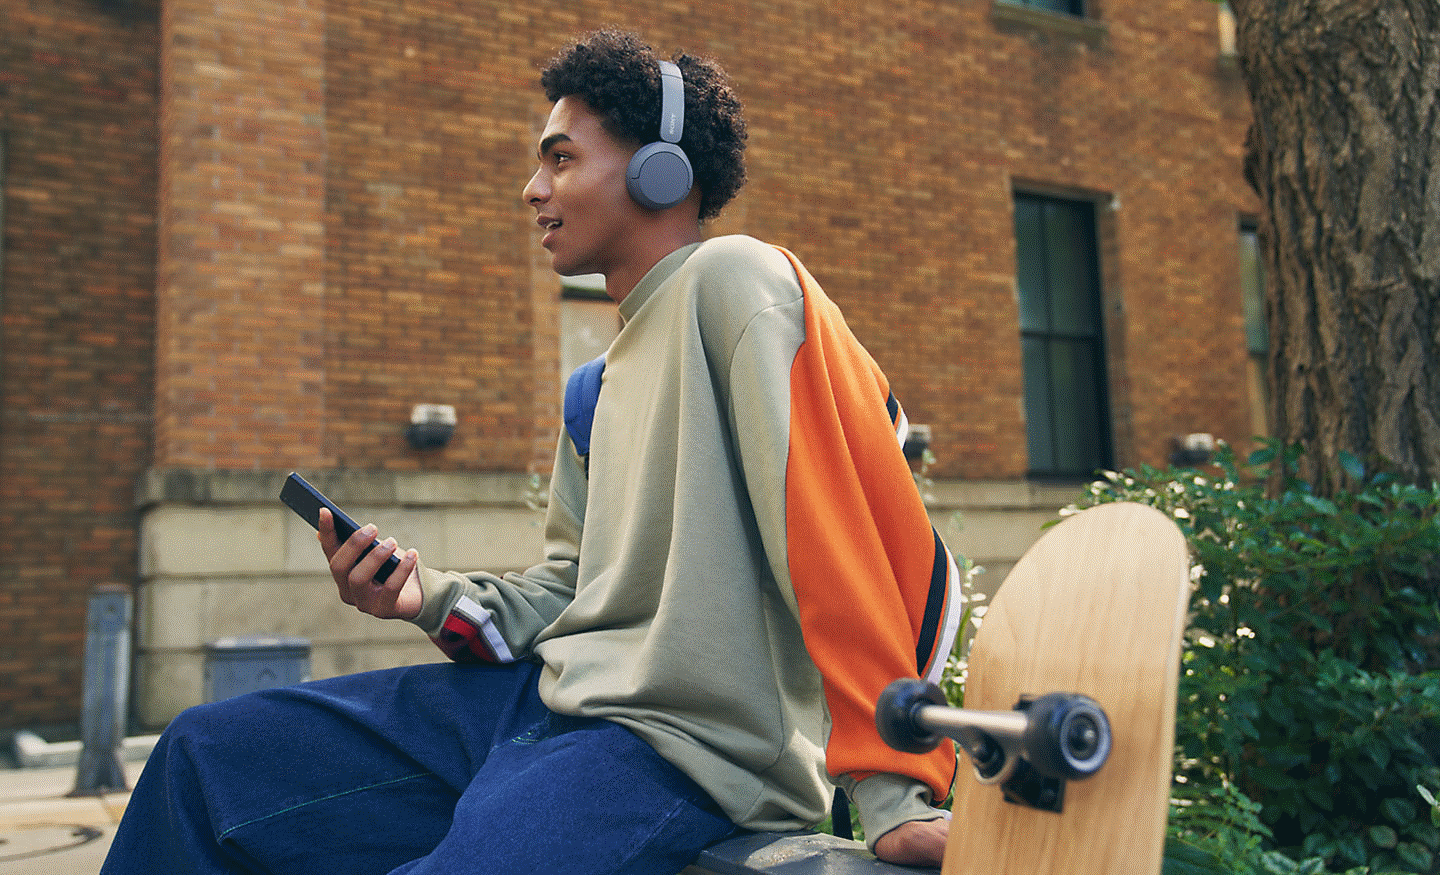 Bild eines Mannes, der auf einer Mauer sitzt, WH-CH520 Kopfhörer von Sony trägt und ein Mobiltelefon in der Hand hält, mit einem Skateboard im Vordergrund